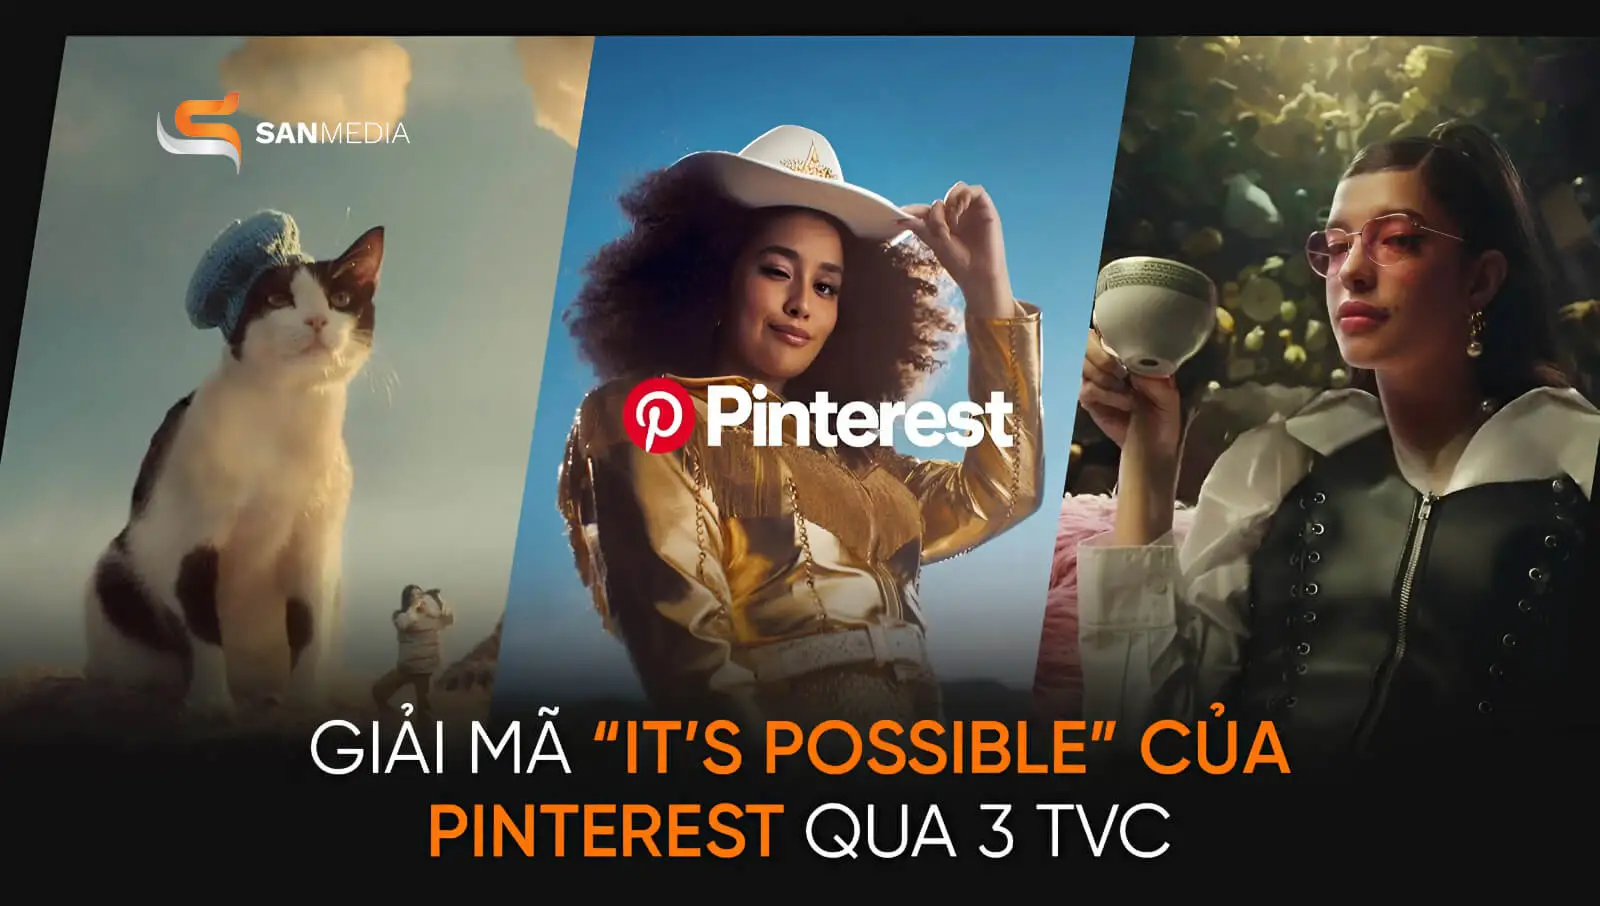 Giải mã “It’s Possible” của Pinterest qua 3 TVC quảng cáo ấn tượng